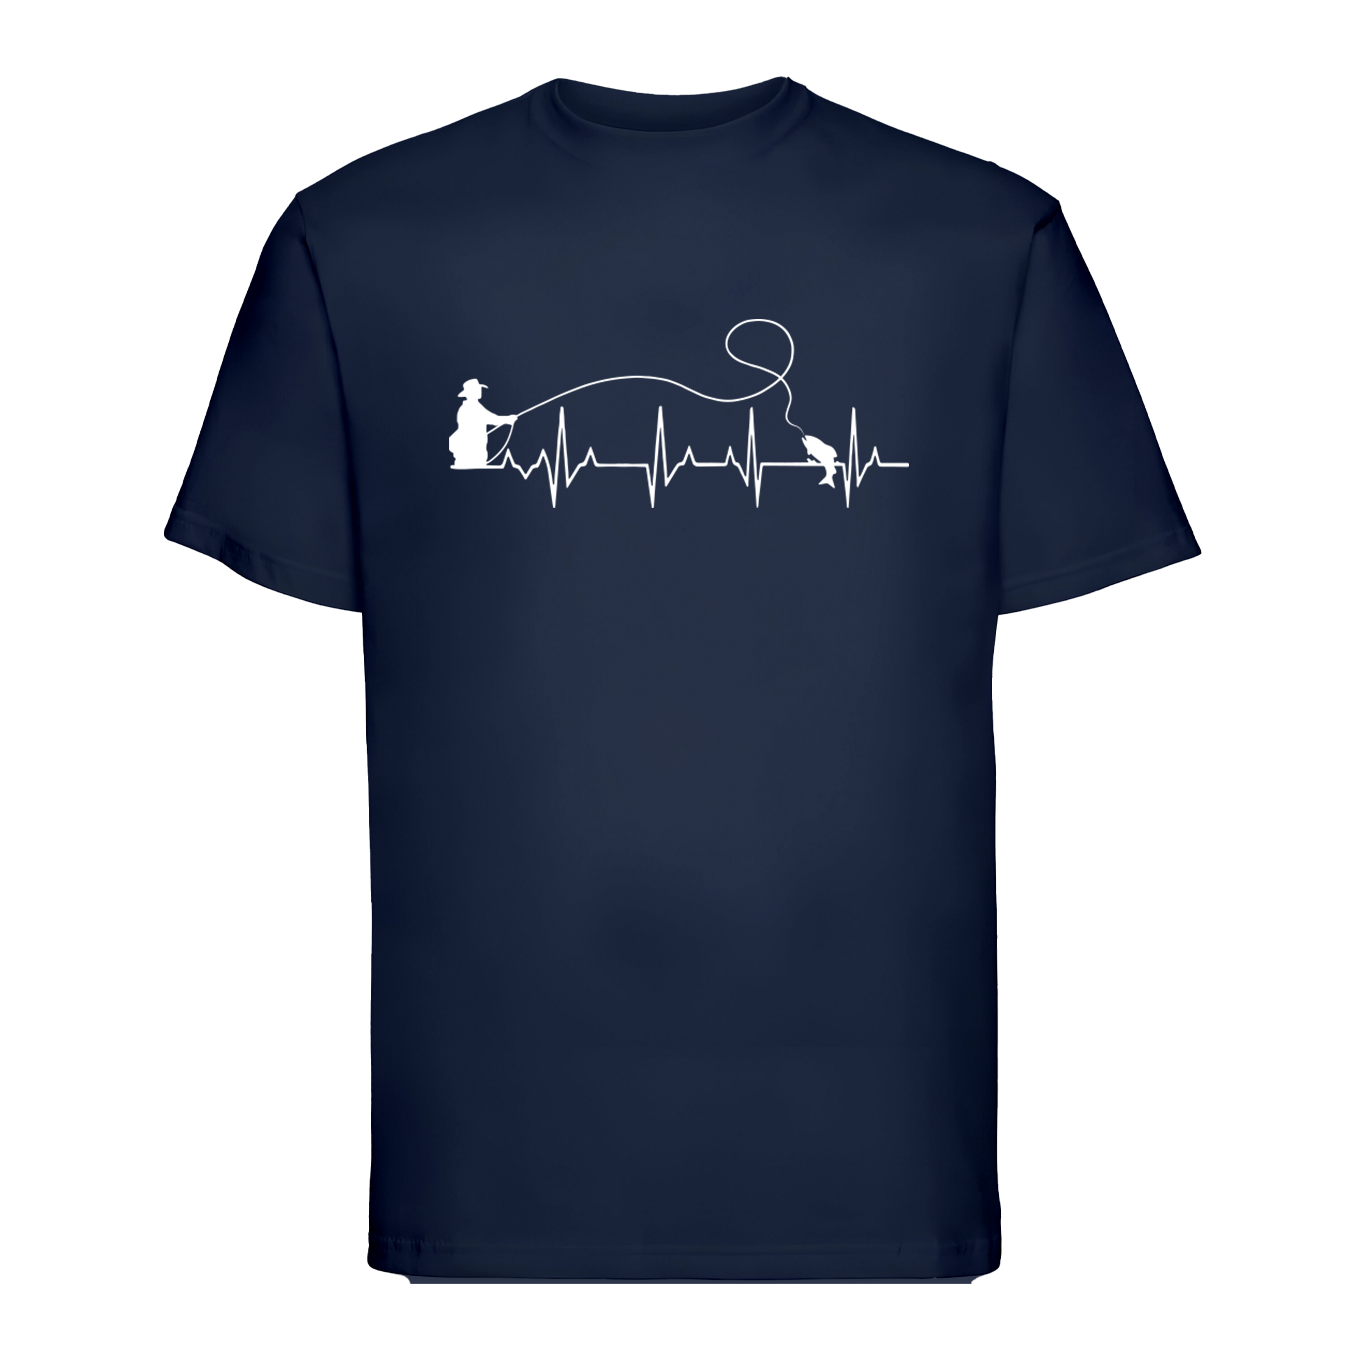 T-shirt "Fishing Heartbeat"